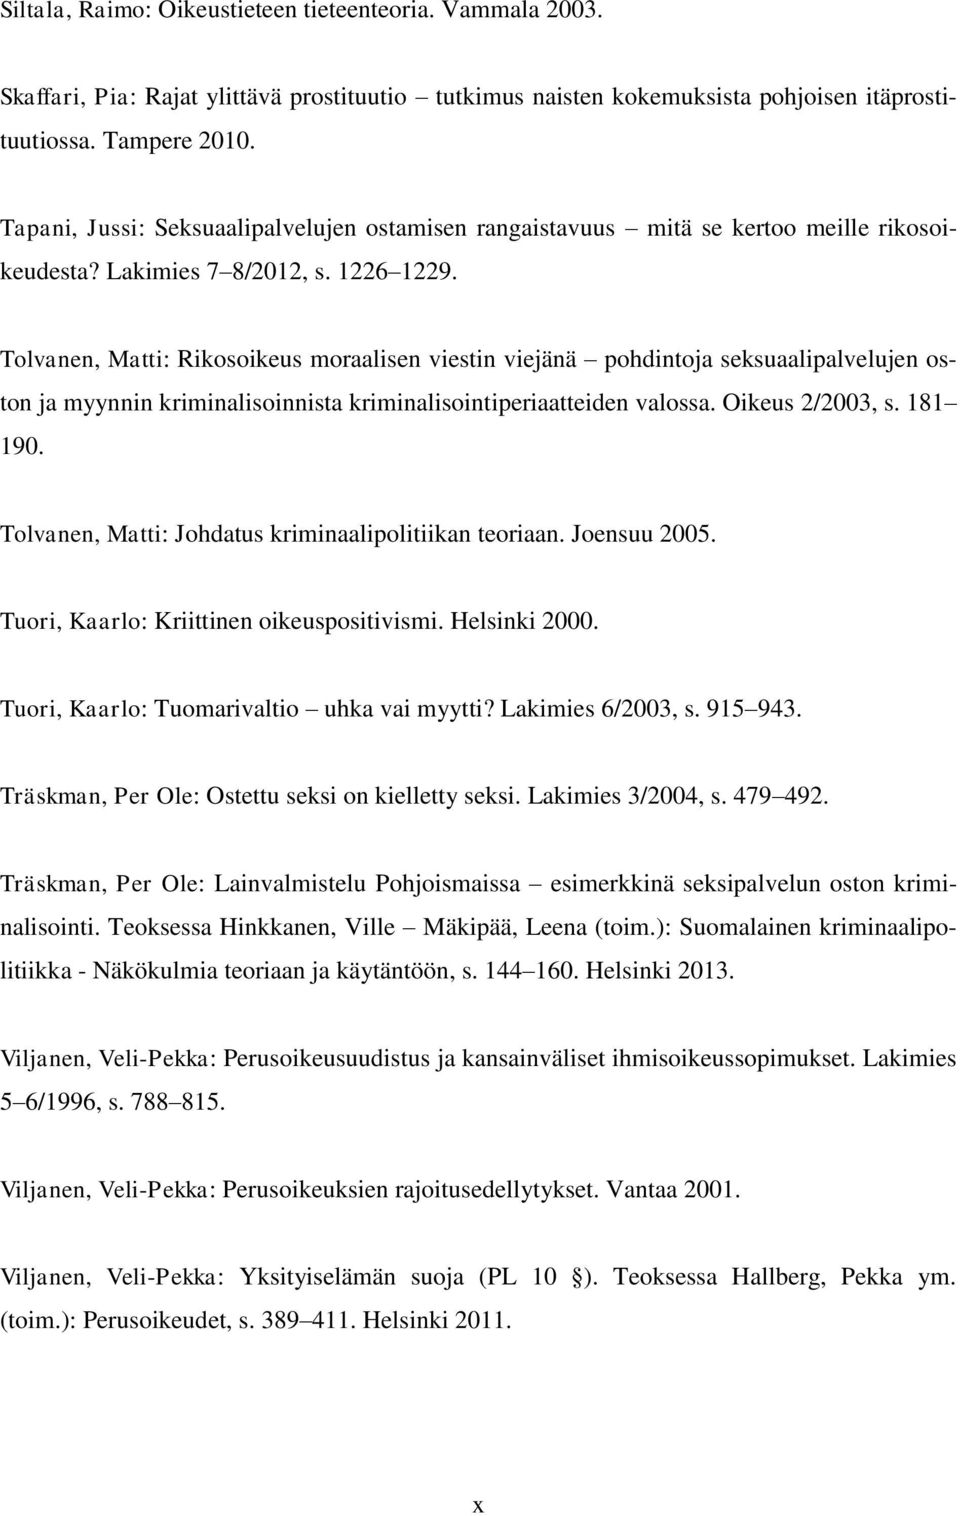 Tolvanen, Matti: Rikosoikeus moraalisen viestin viejänä pohdintoja seksuaalipalvelujen oston ja myynnin kriminalisoinnista kriminalisointiperiaatteiden valossa. Oikeus 2/2003, s. 181 190.